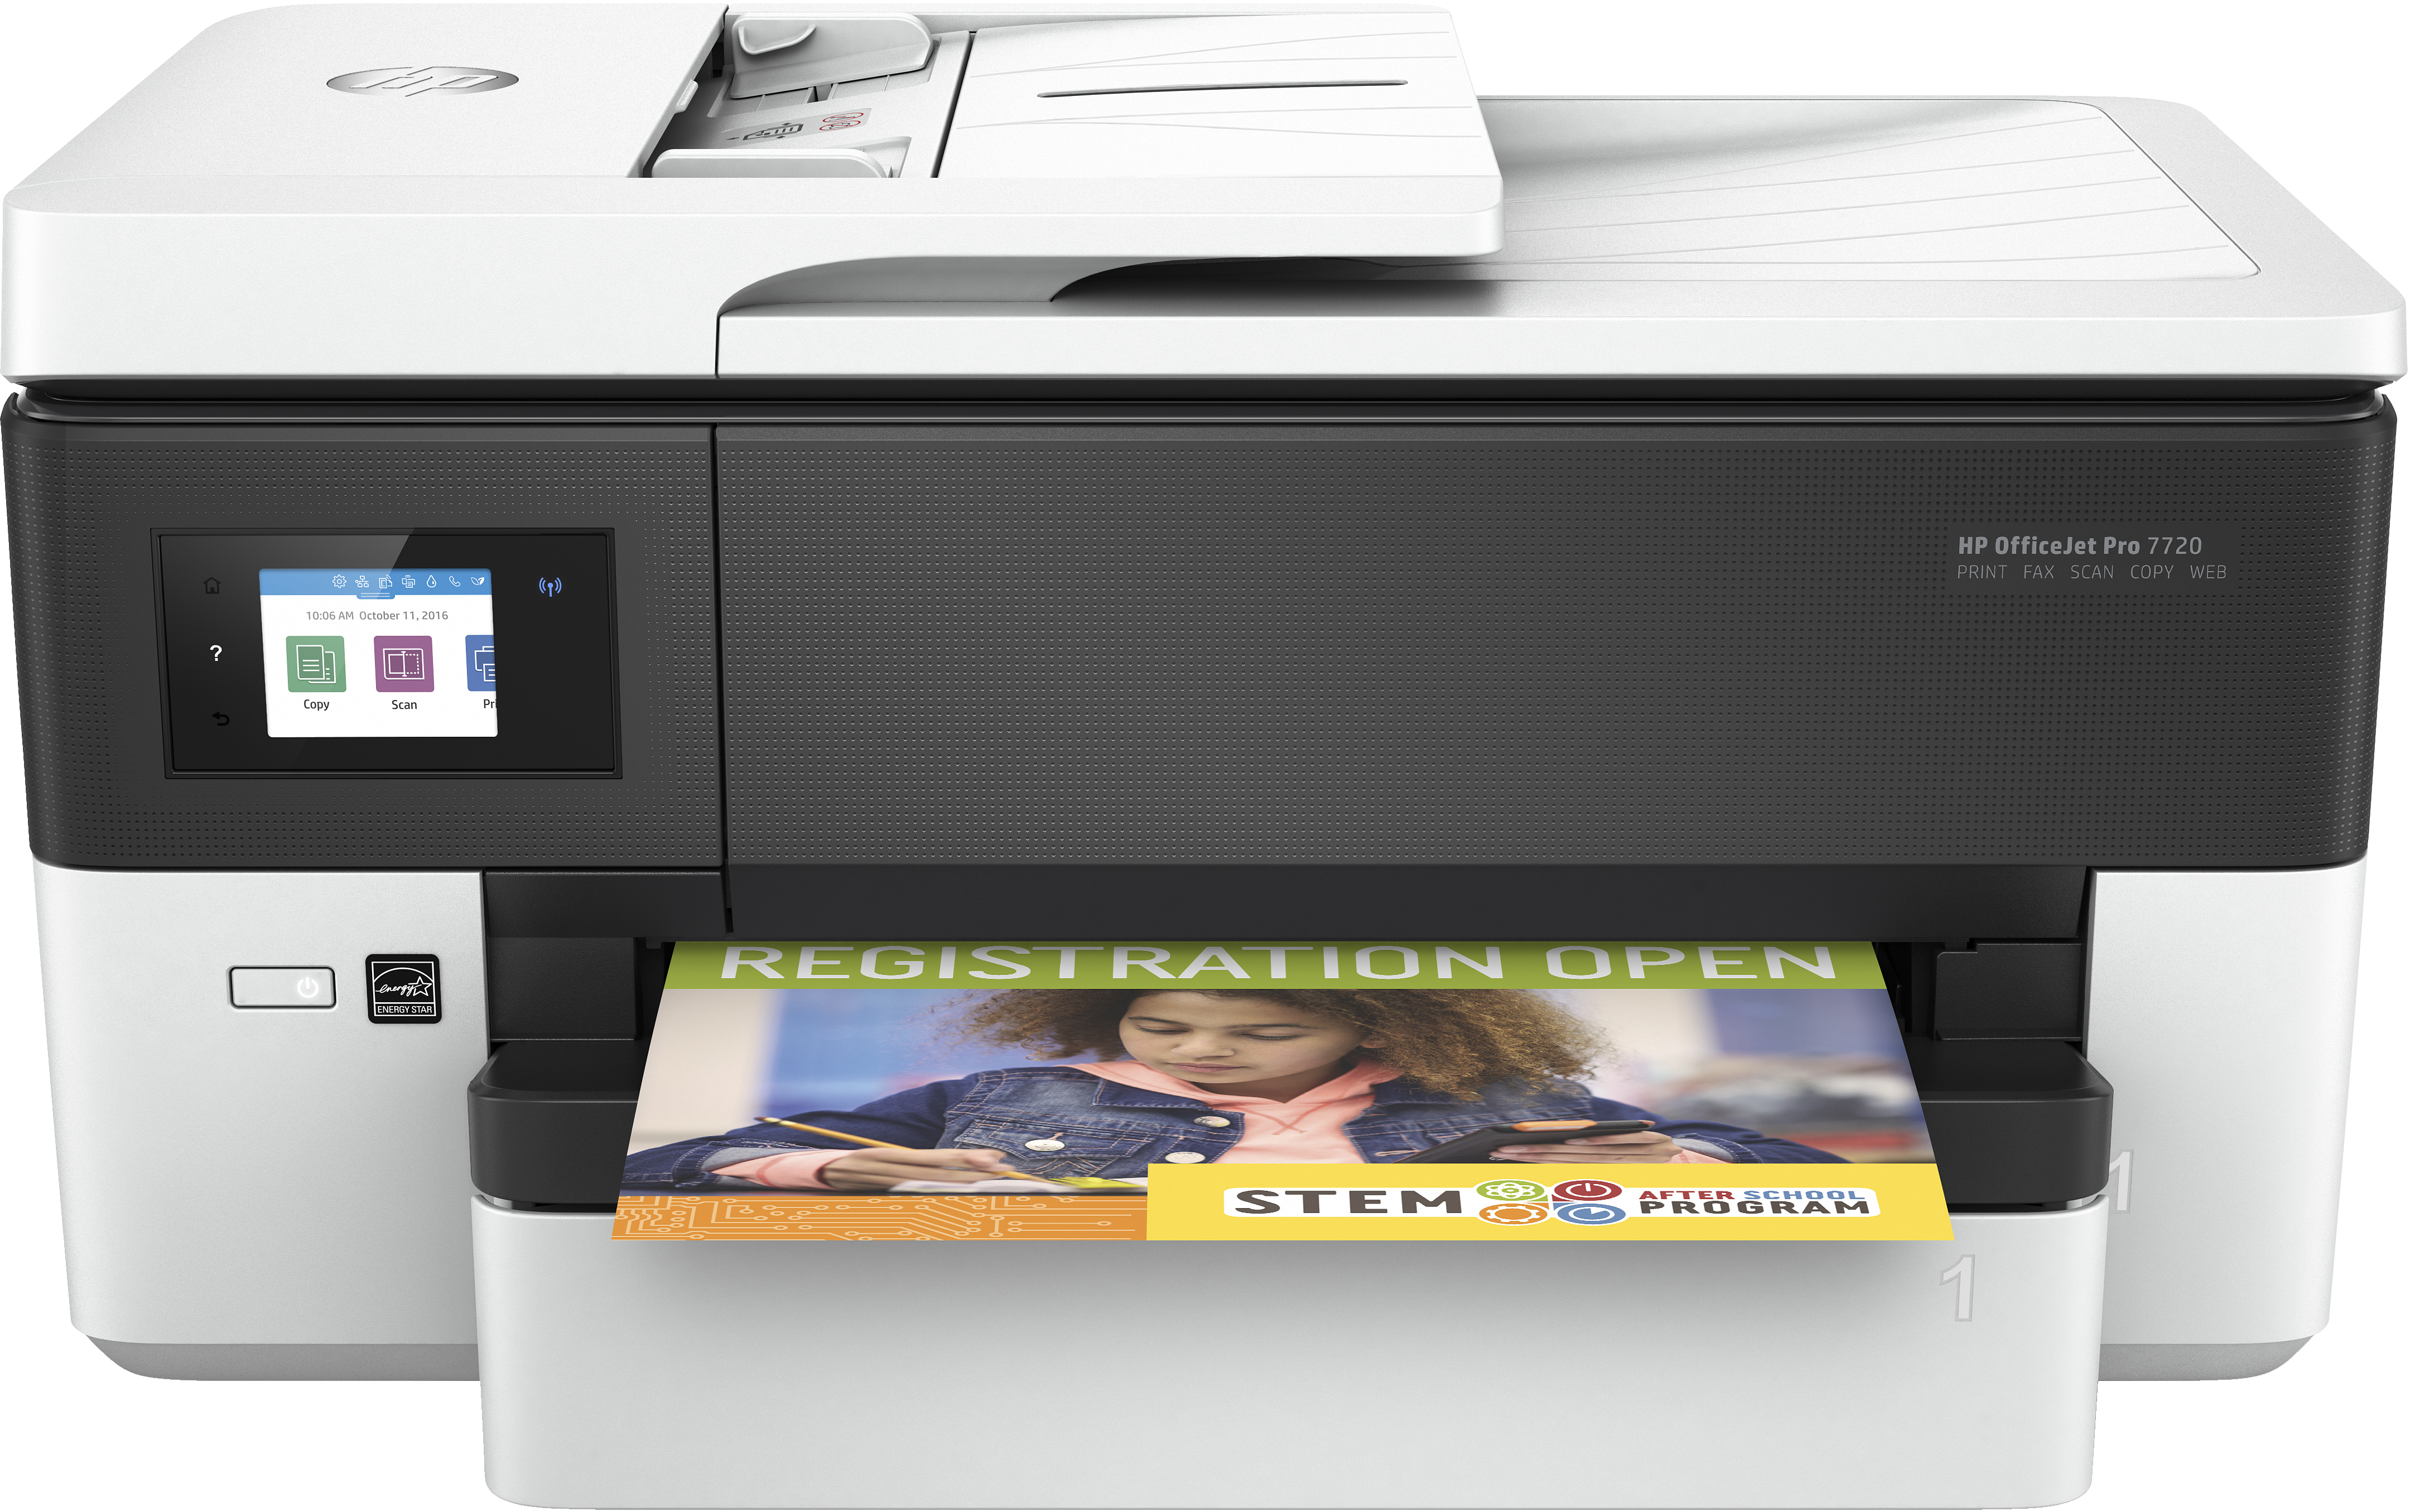 HP OfficeJet Pro HP OfficeJet Pro 7720 breedformaat All-in-One printer, Kleur, Printer voor Kleine kantoren, Printen, kopiëren, scannen, faxen, Invoer voor 35 vel; Printen via USB-poort aan voorzijde; Dubbelzijdig printen